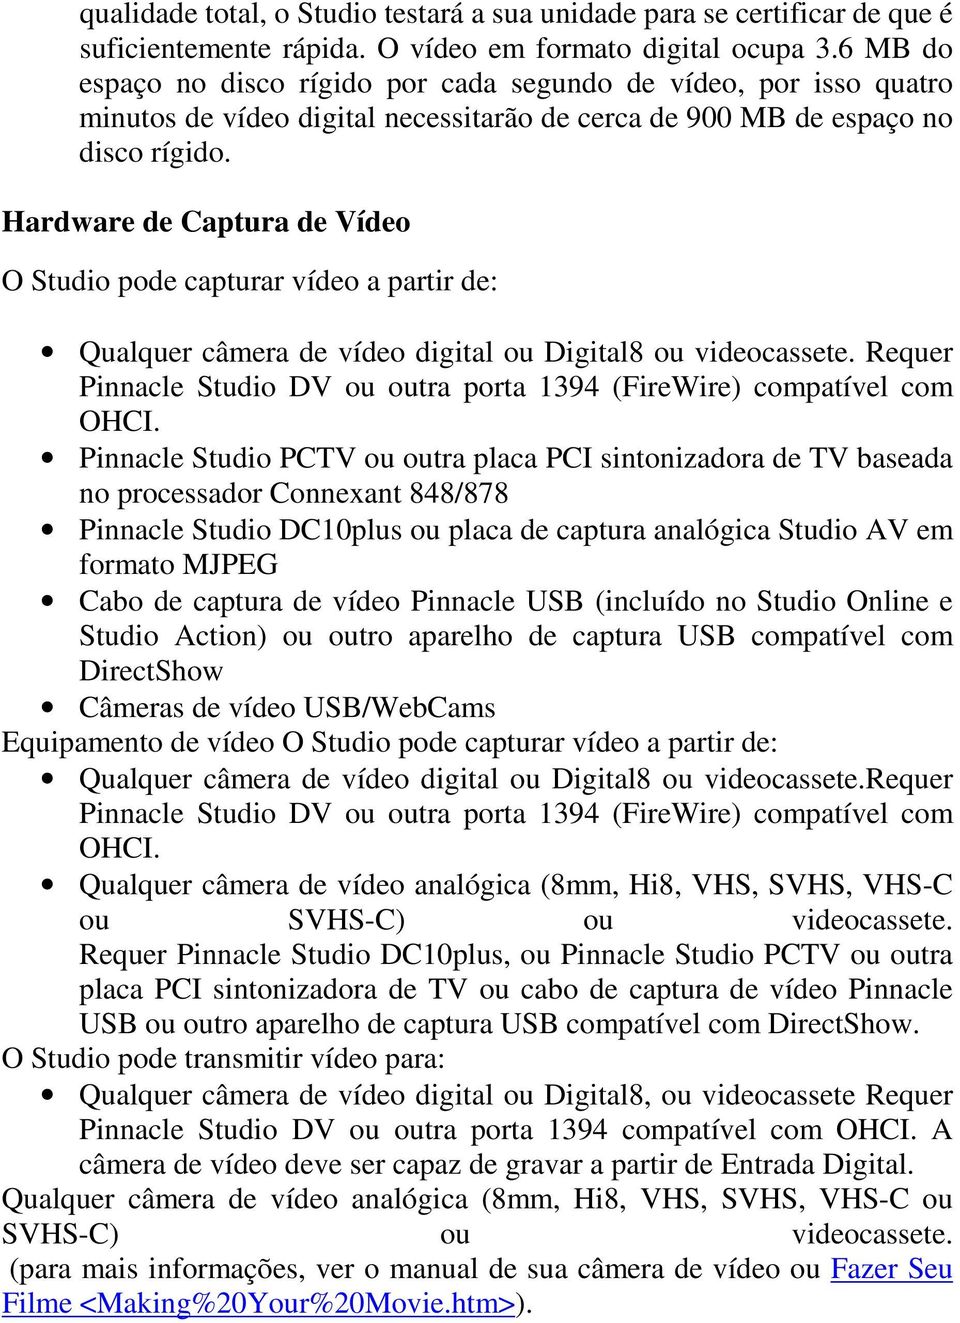 Hardware de Captura de Vídeo O Studio pode capturar vídeo a partir de: Qualquer câmera de vídeo digital ou Digital8 ou videocassete.